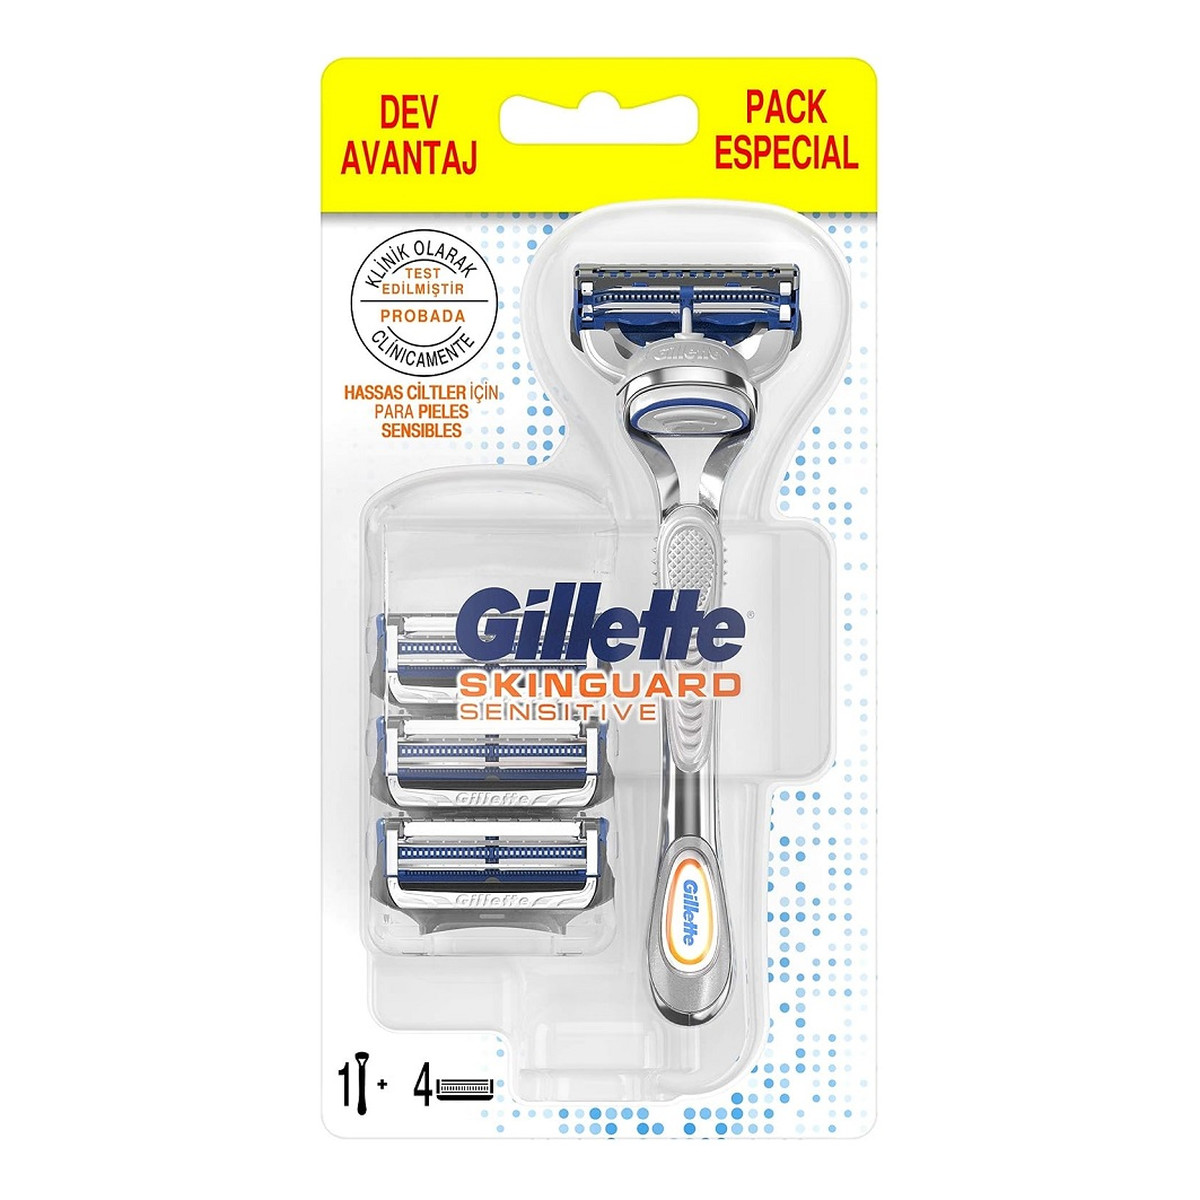 Gillette Skinguard sensitive maszynka do golenia do skóry wrażliwej + wkład 4szt